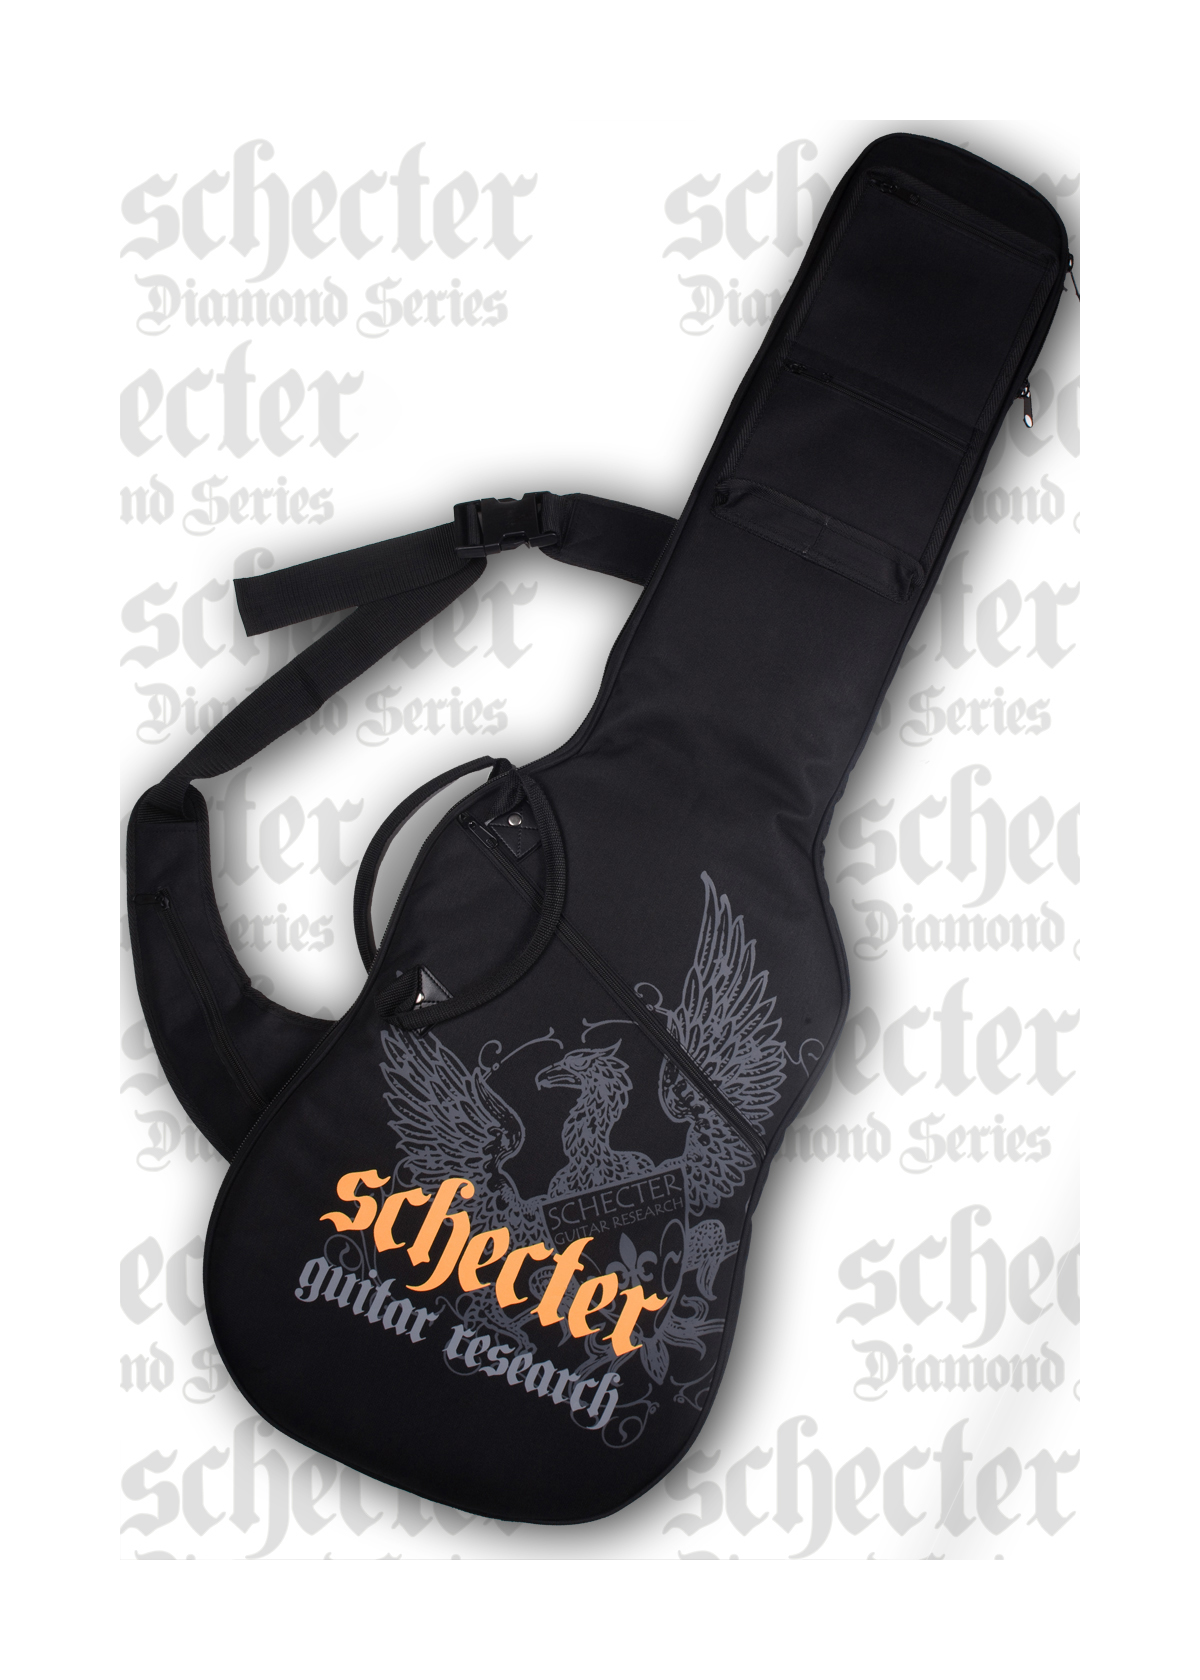 Schecter Schecter Diamond-Series Guitar Gig Bag